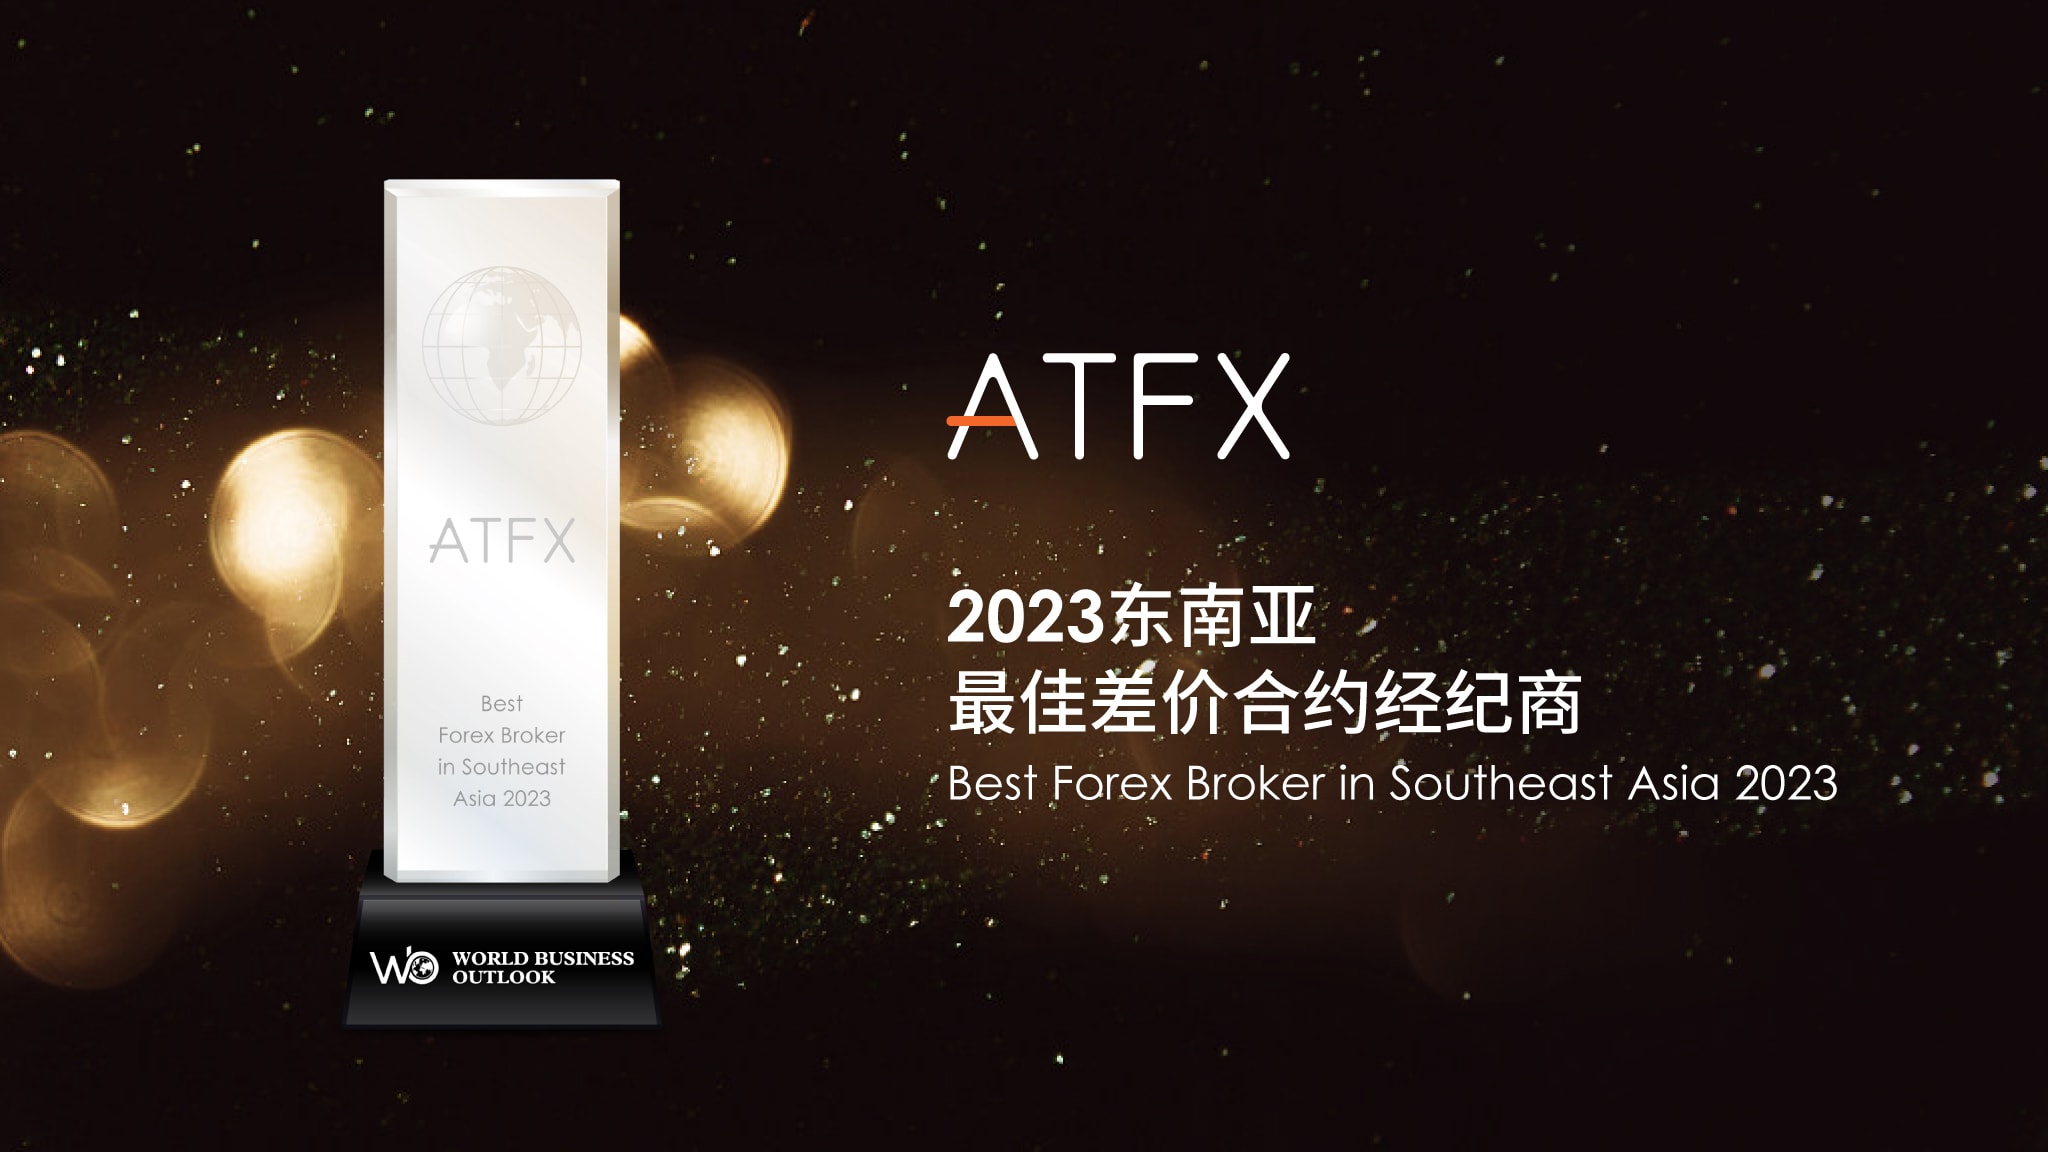 atfx-best-forex-broker-southeast-asia-2023